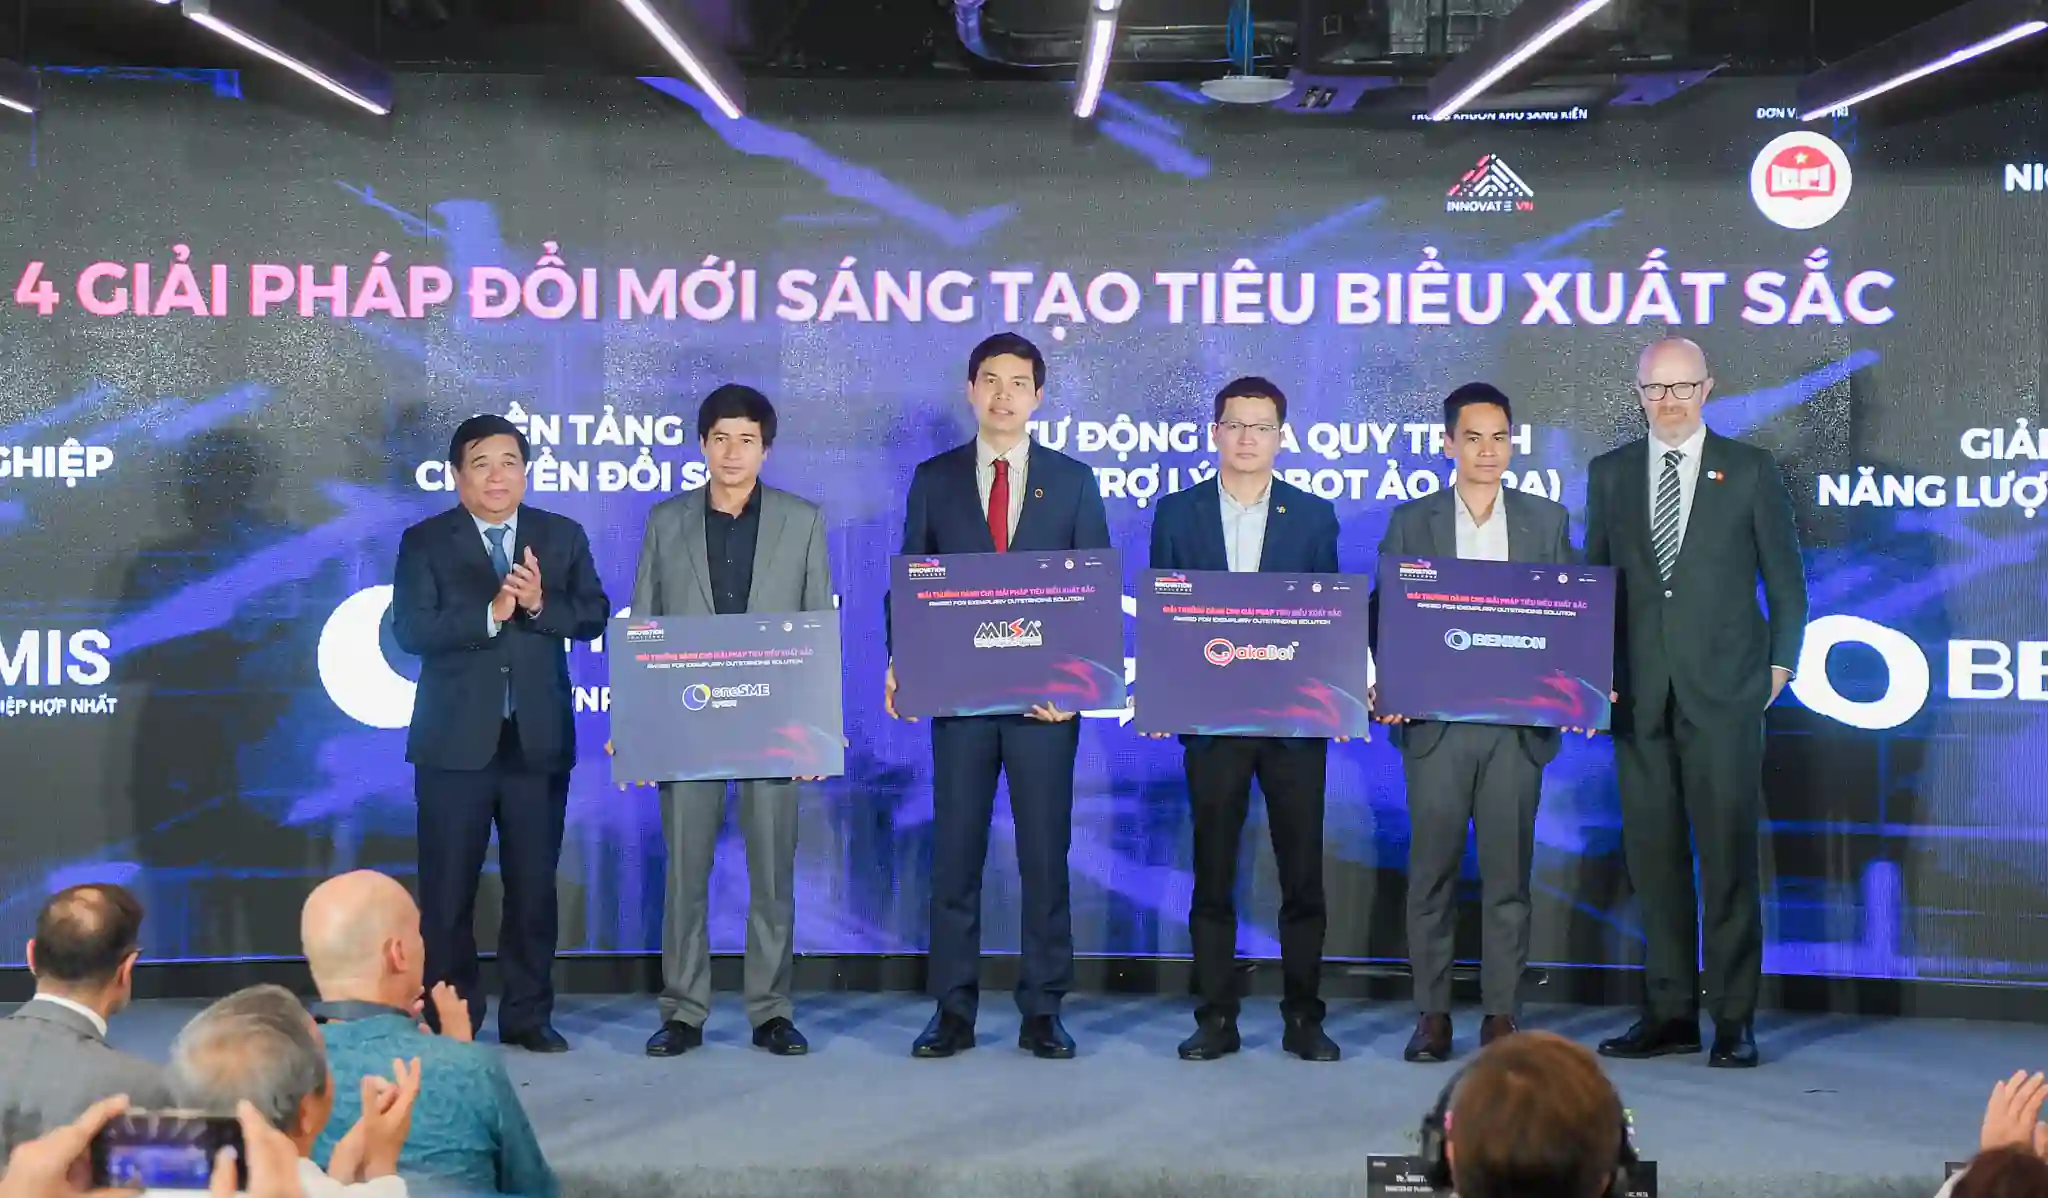 MISA AMIS là 1 trong 4 giải pháp xuất sắc nhất tại Lễ Công bố Giải pháp Đổi mới sáng tạo Việt Nam 2023